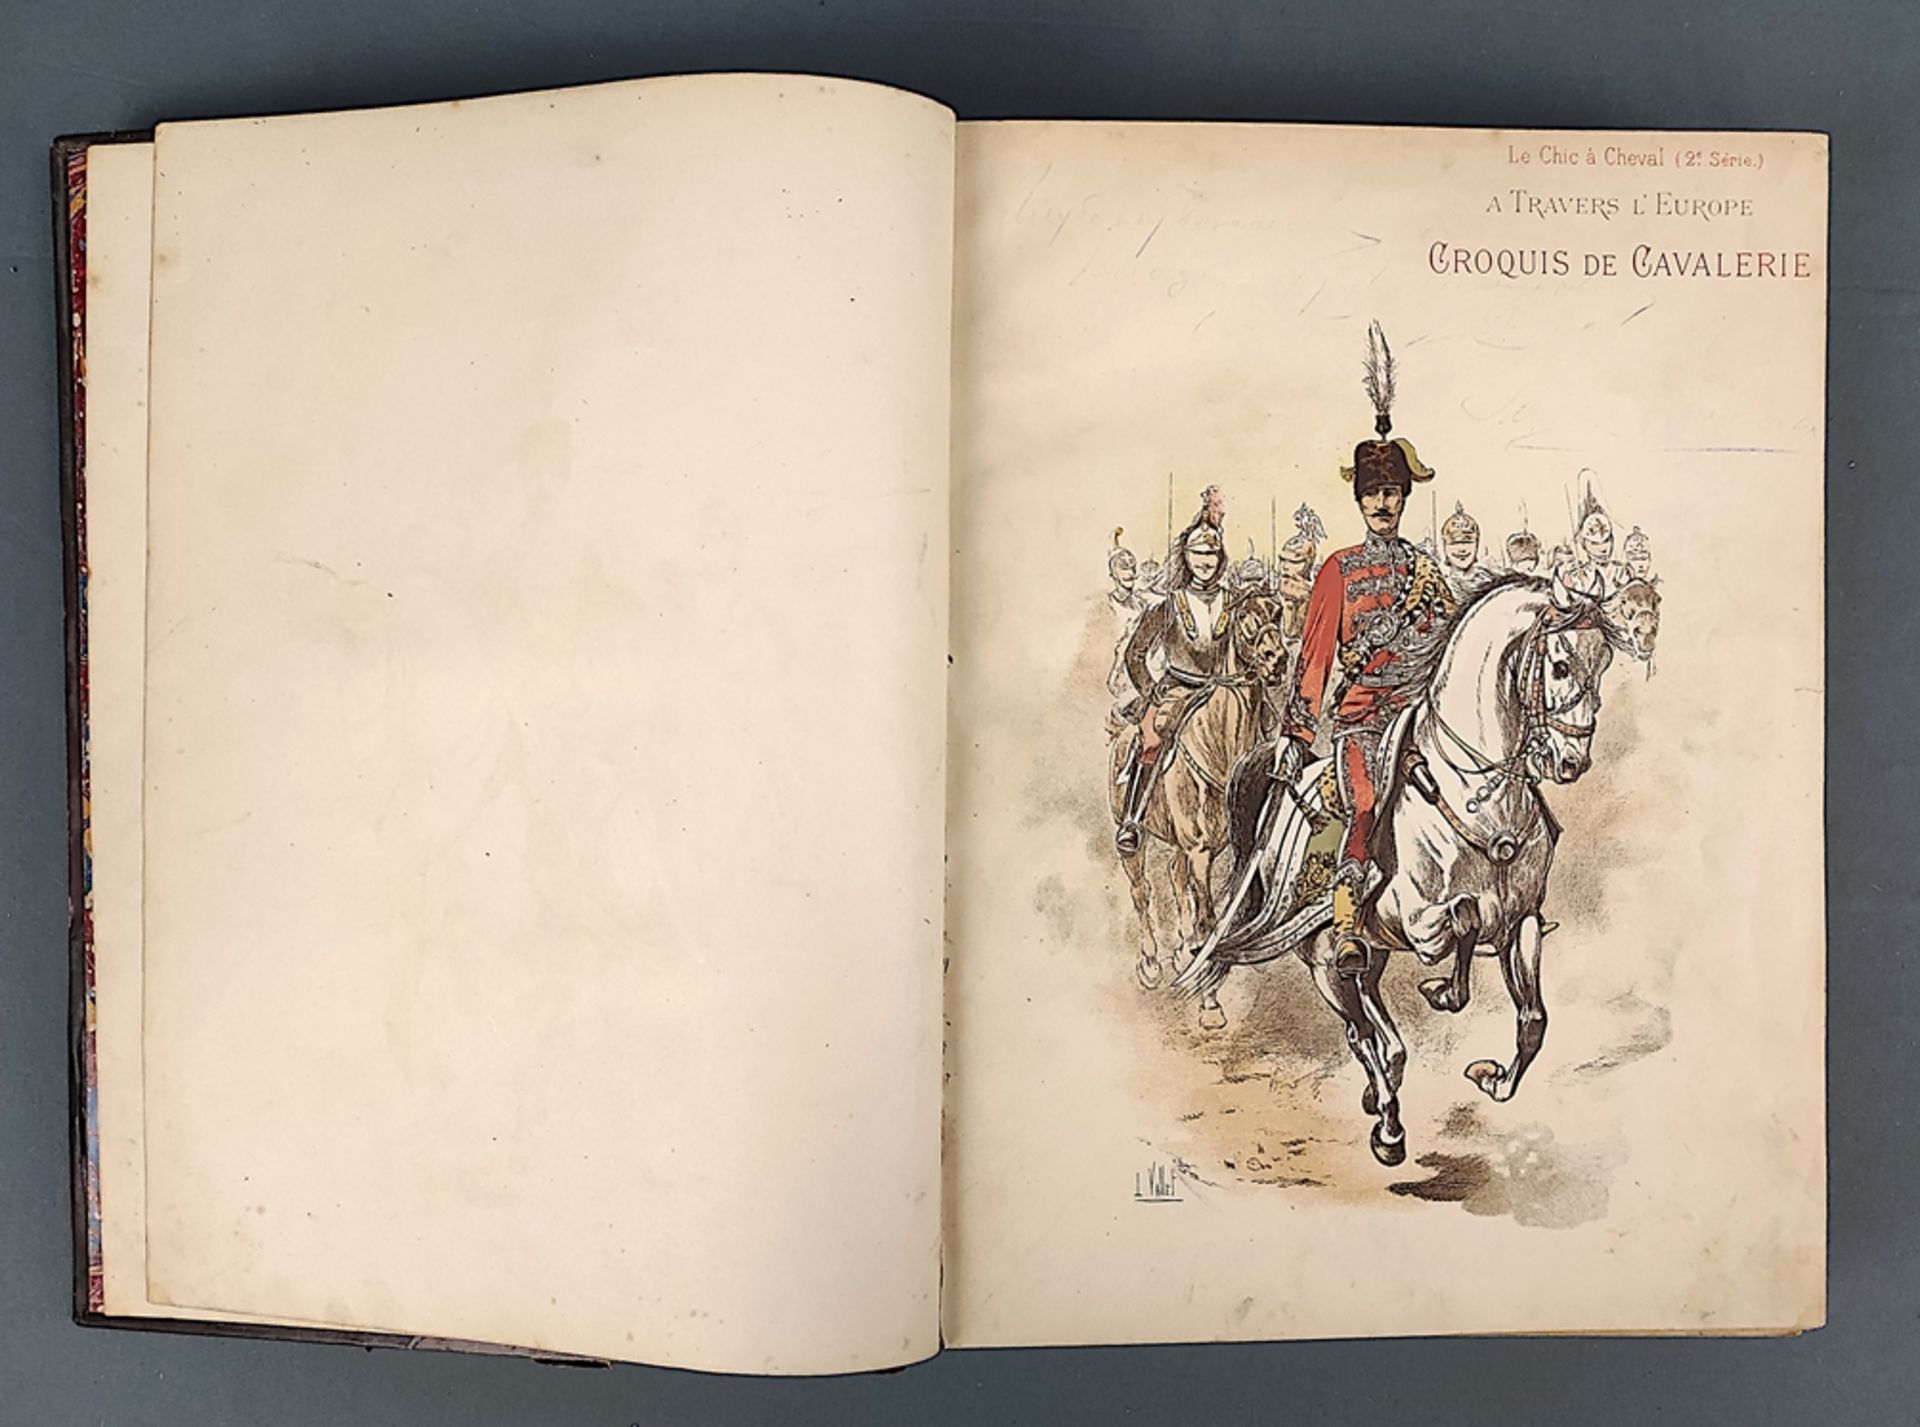 Book, Vallet, L. "A travers l'Europe. Croquis de cavalerie", Paris 1893, Libraire de Firmin-Didot e - Image 3 of 7